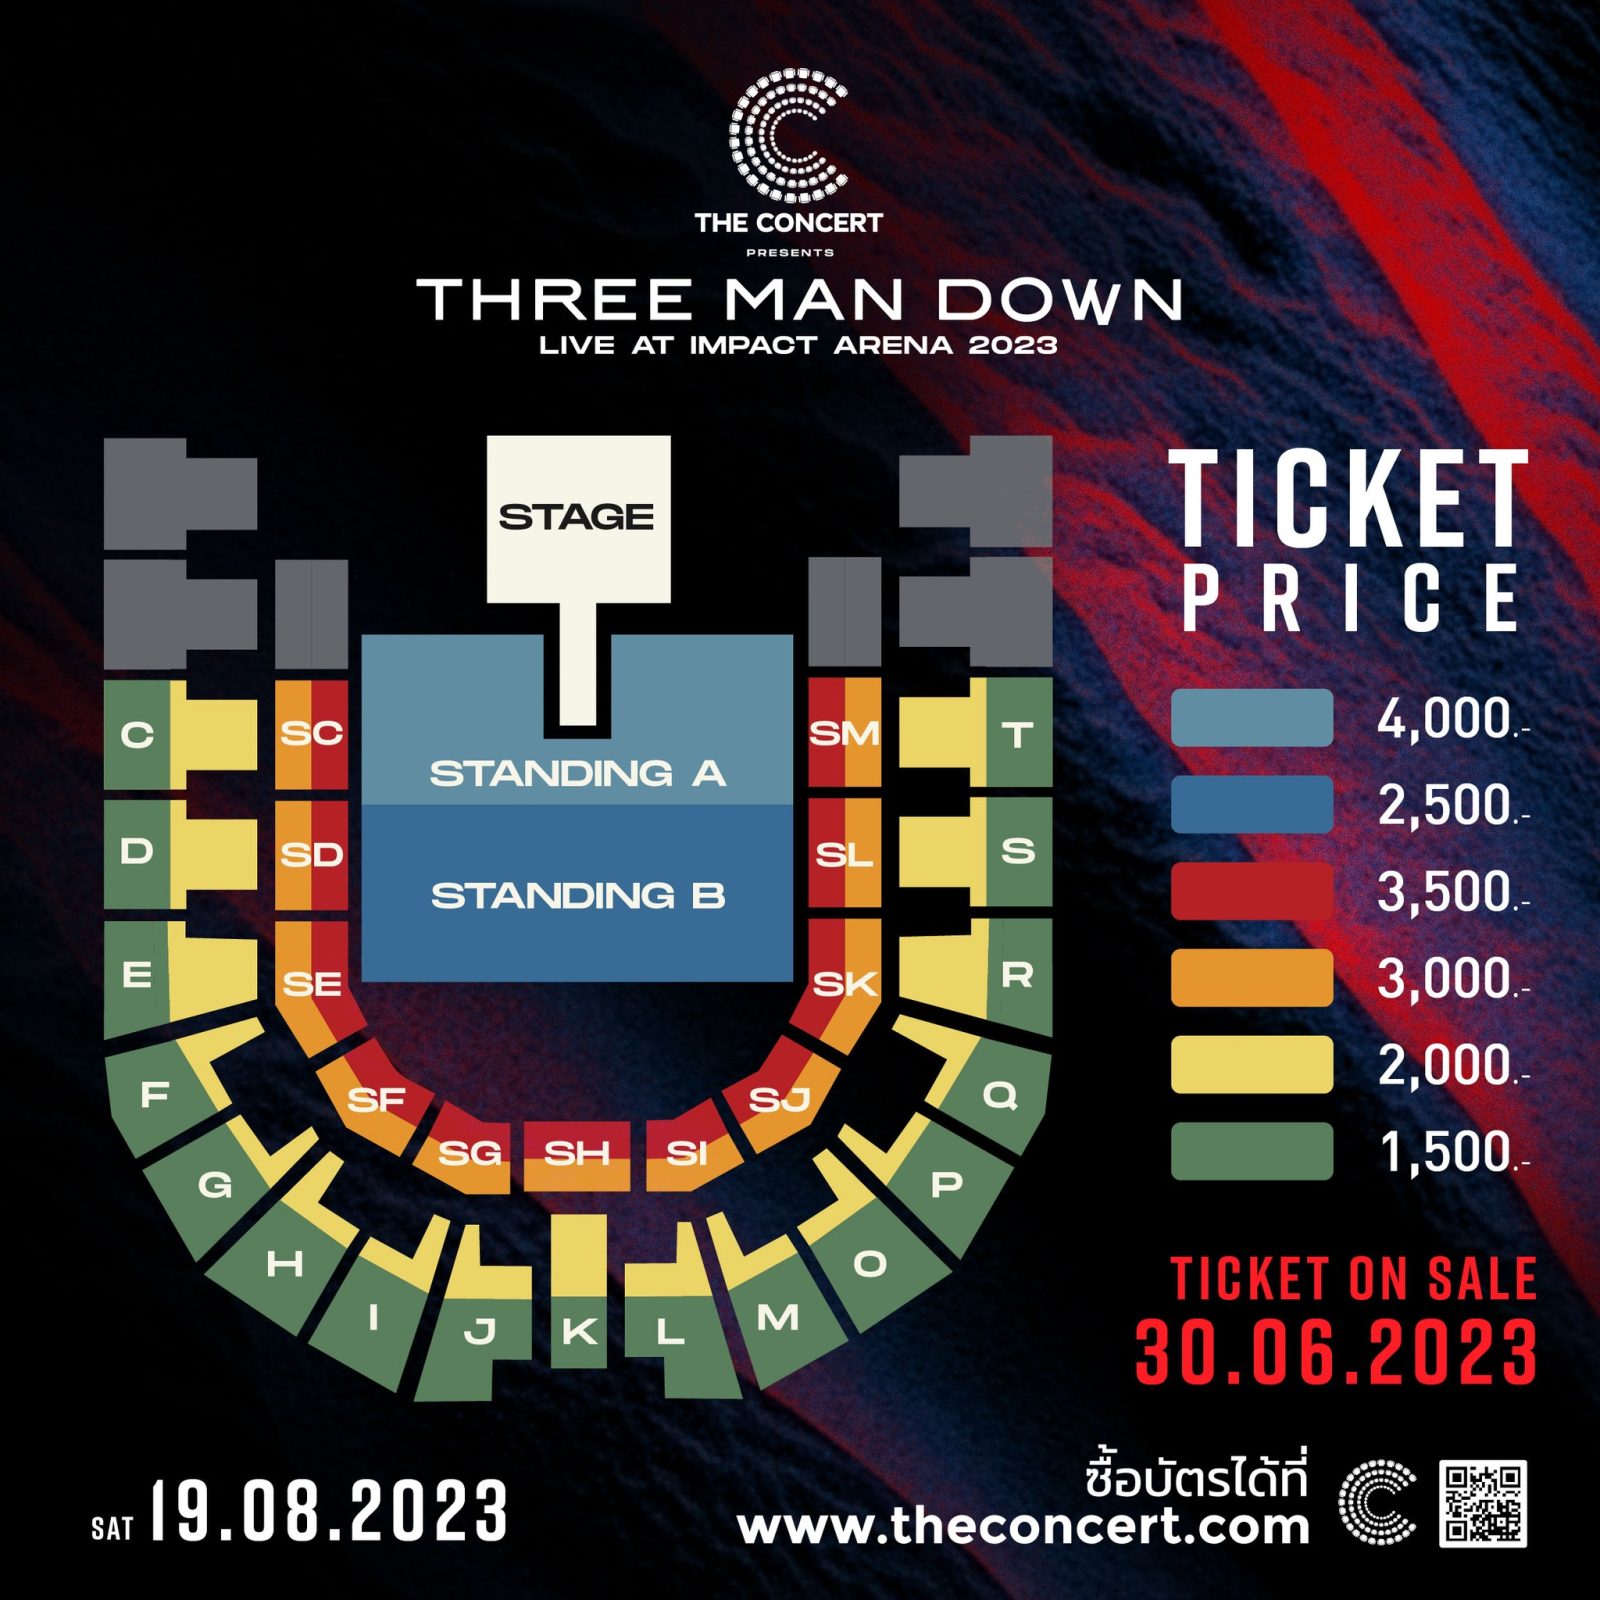 แผงผังคอนเสิร์ต Three Man Down Live At Impact Arena 2023 (เดอะ คอนเสิร์ต แอปพลิเคชัน พริเซนต์ ทรีแมนดาวน์ ไลฟ์ แอต อิมแพ็ค อารีน่า สองพันยี่สิบสาม)